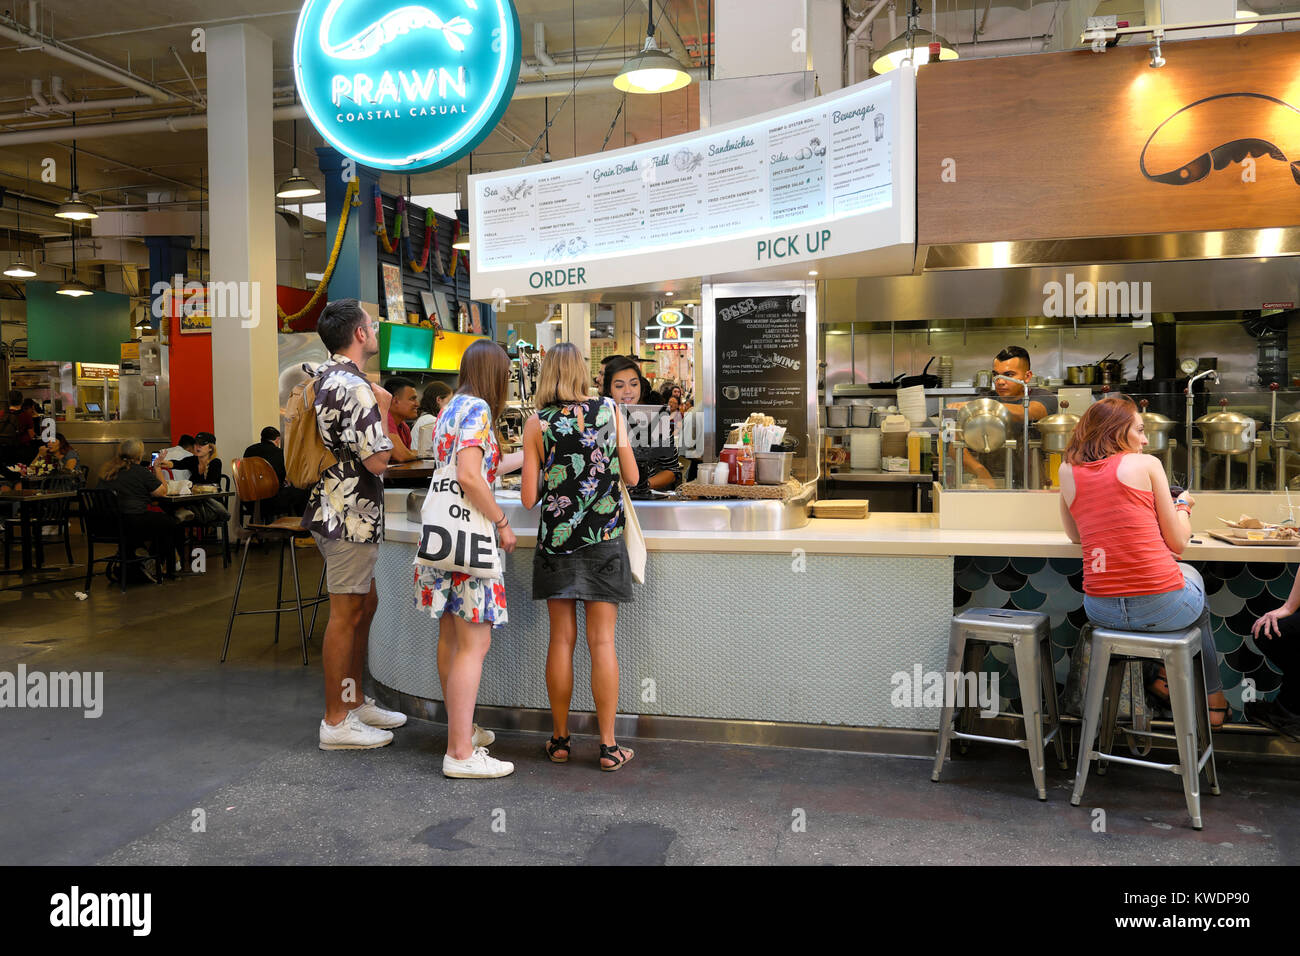 PHOTO GALLERY: Inside GetGo Café + Market's First-Ever Arena Store